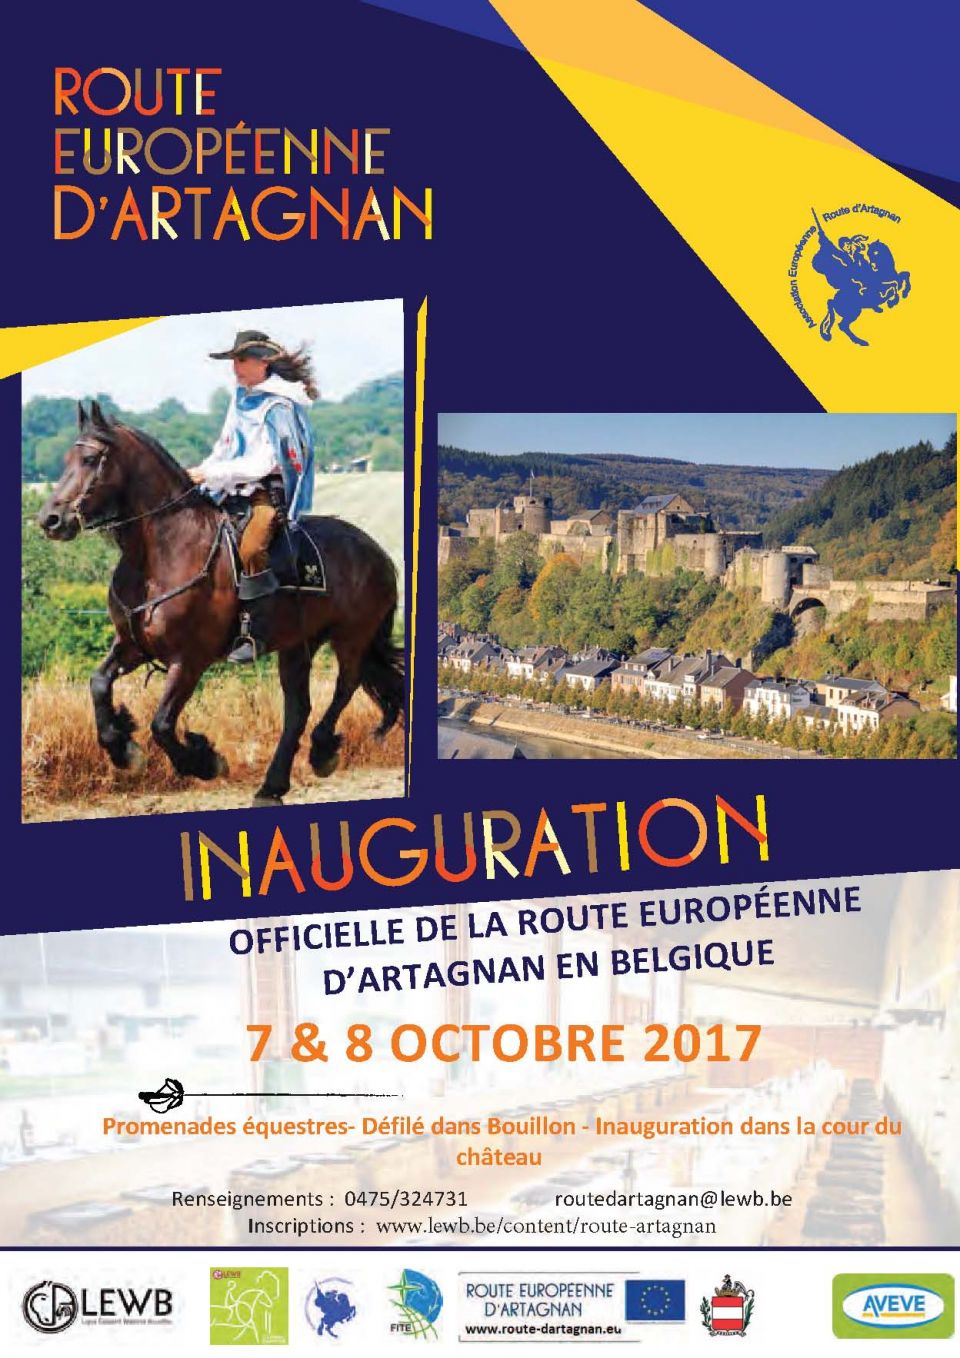 Inauguration de la Route d'Artagnan en Belgique les 7 et 8 octobre 2017 à Bouillon